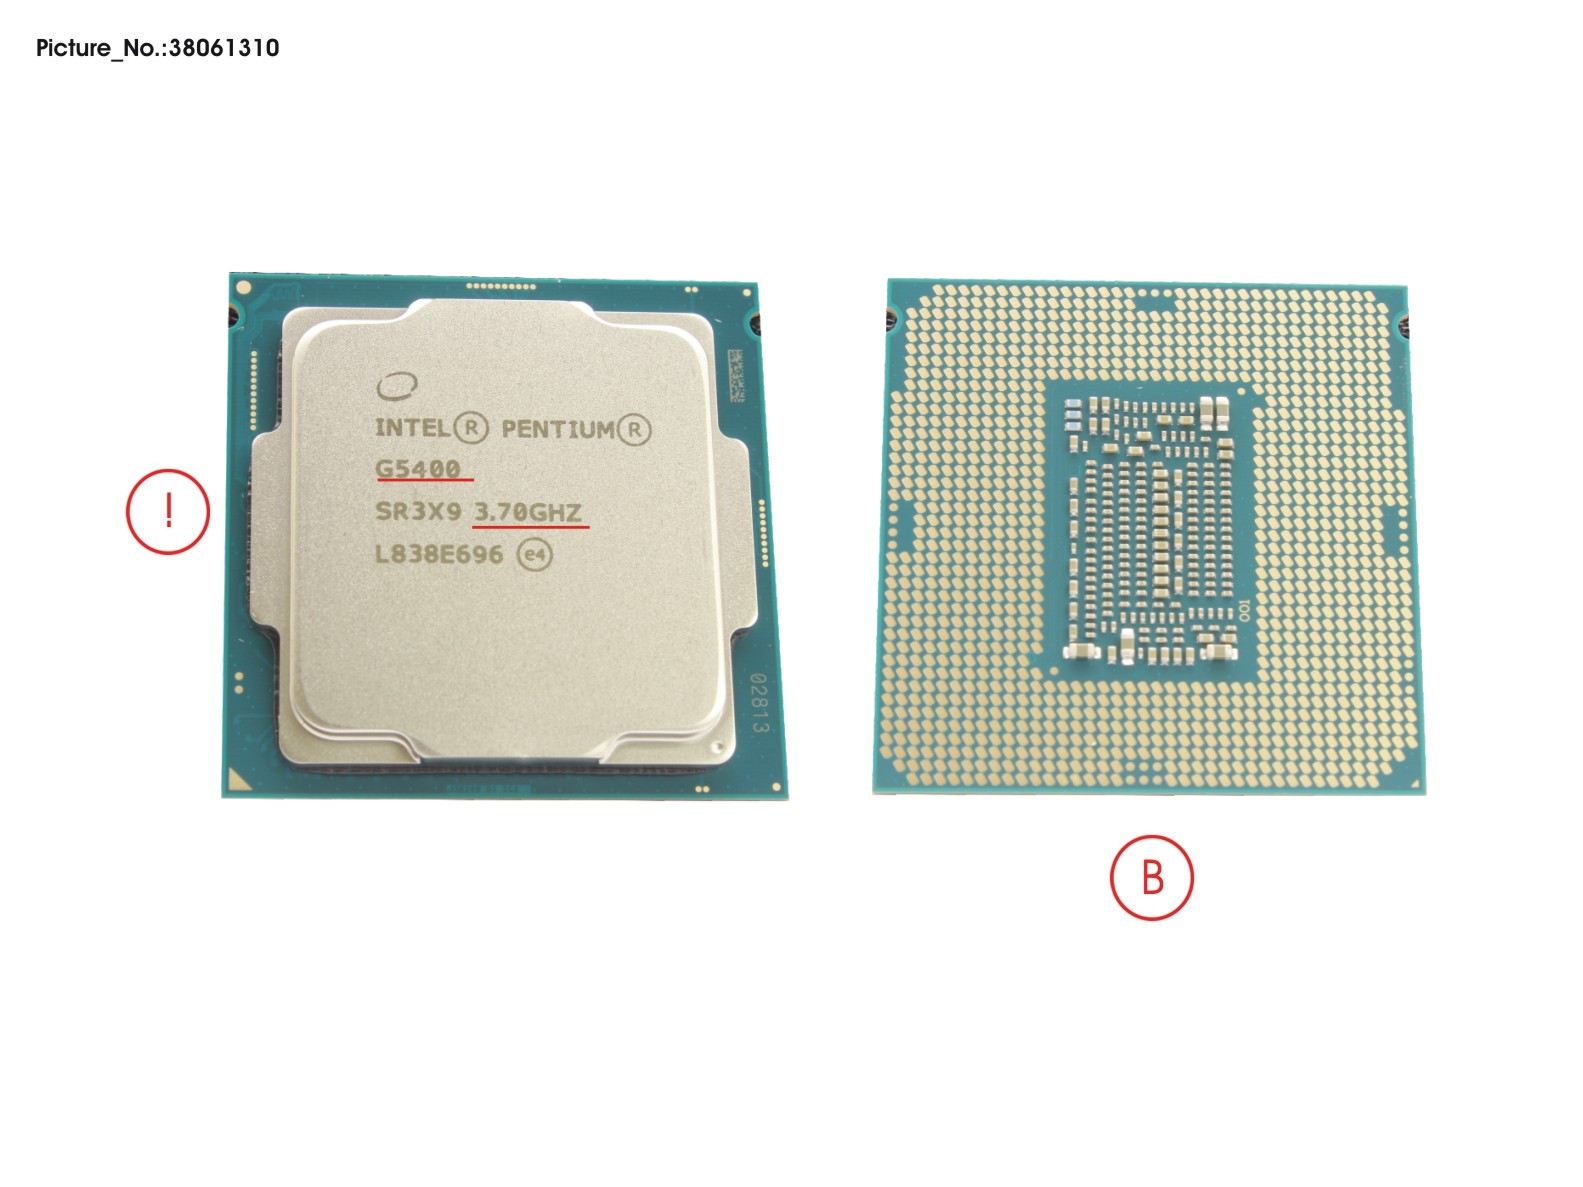 CPU PENTIUM I5 G5400 3.7GHZ 54W